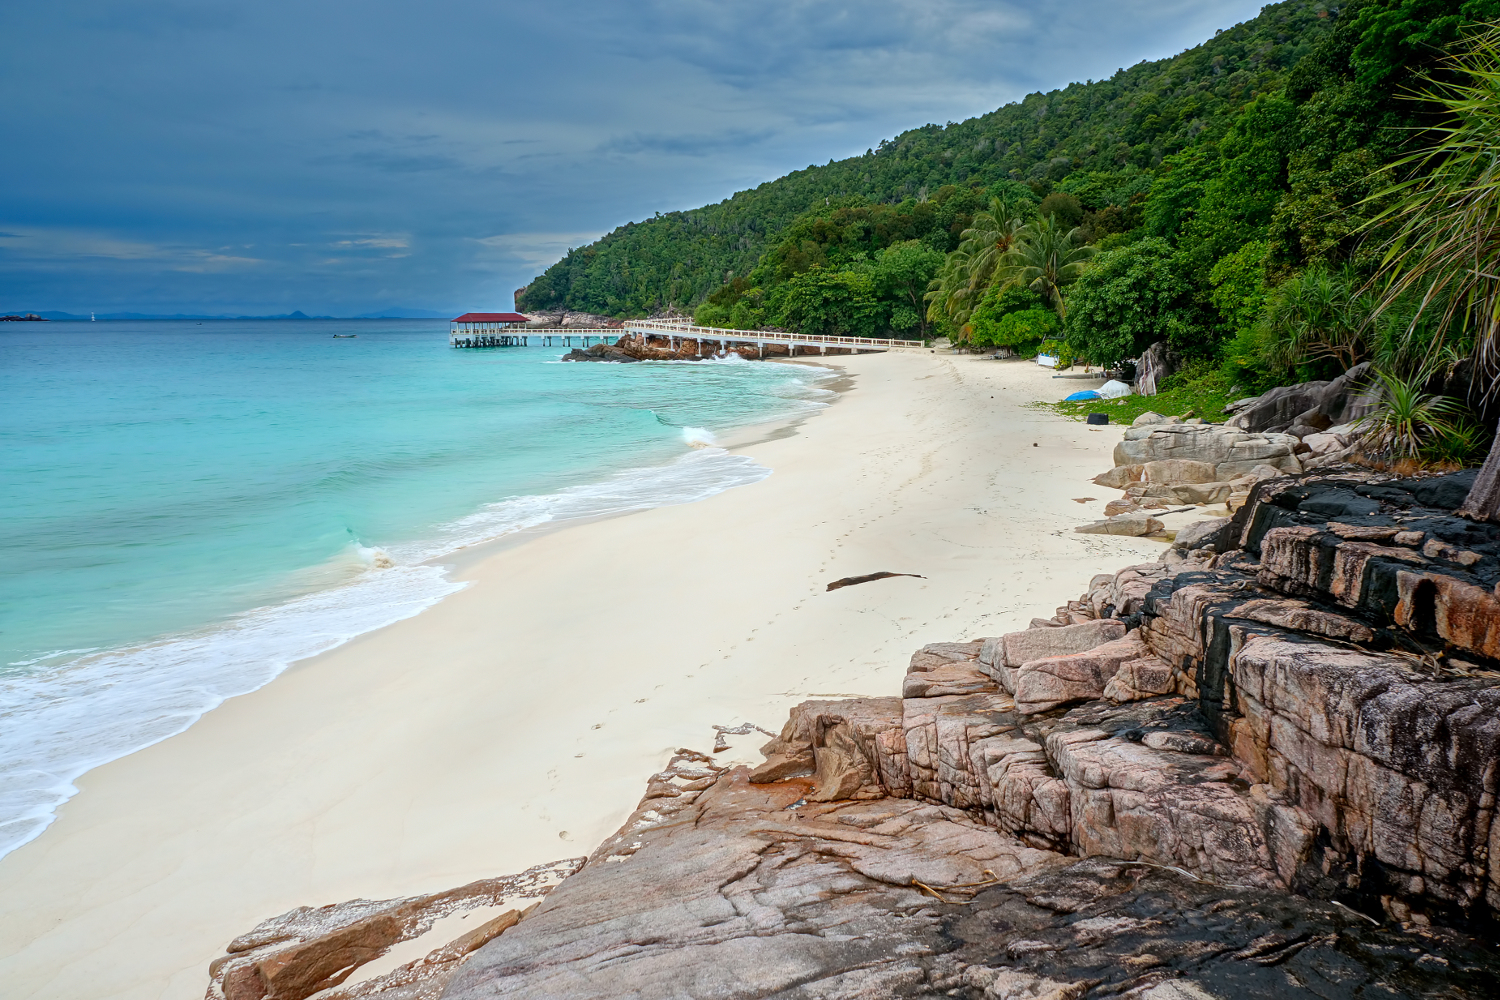 Tropical beach idyll on Pulau Redang © reezuan / Shutterstock